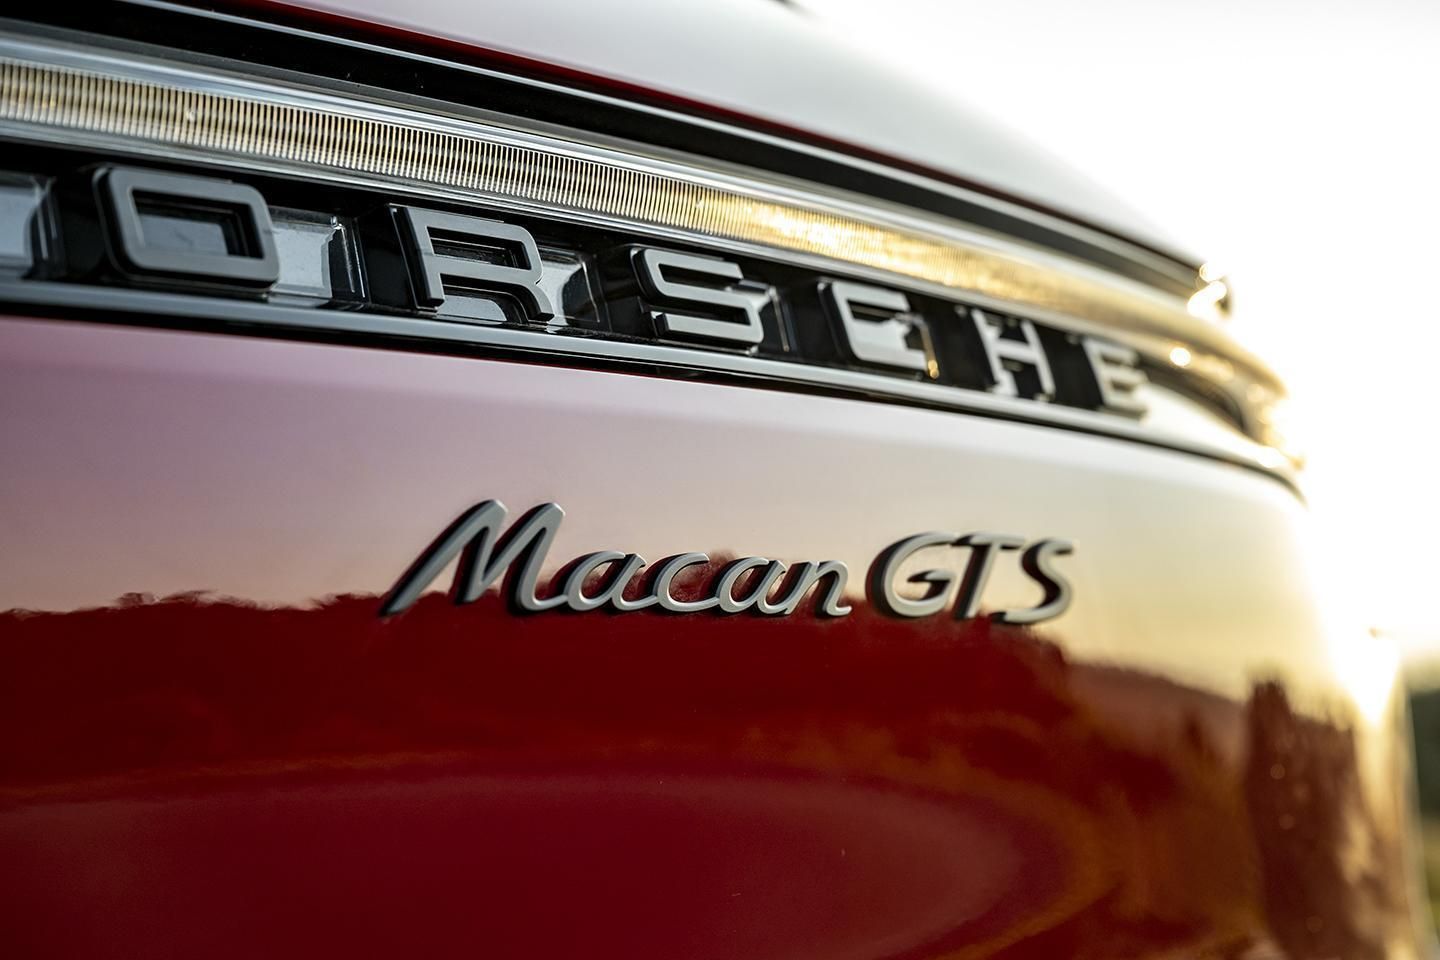 Porsche Macan GTS Written Behind The Vehicle